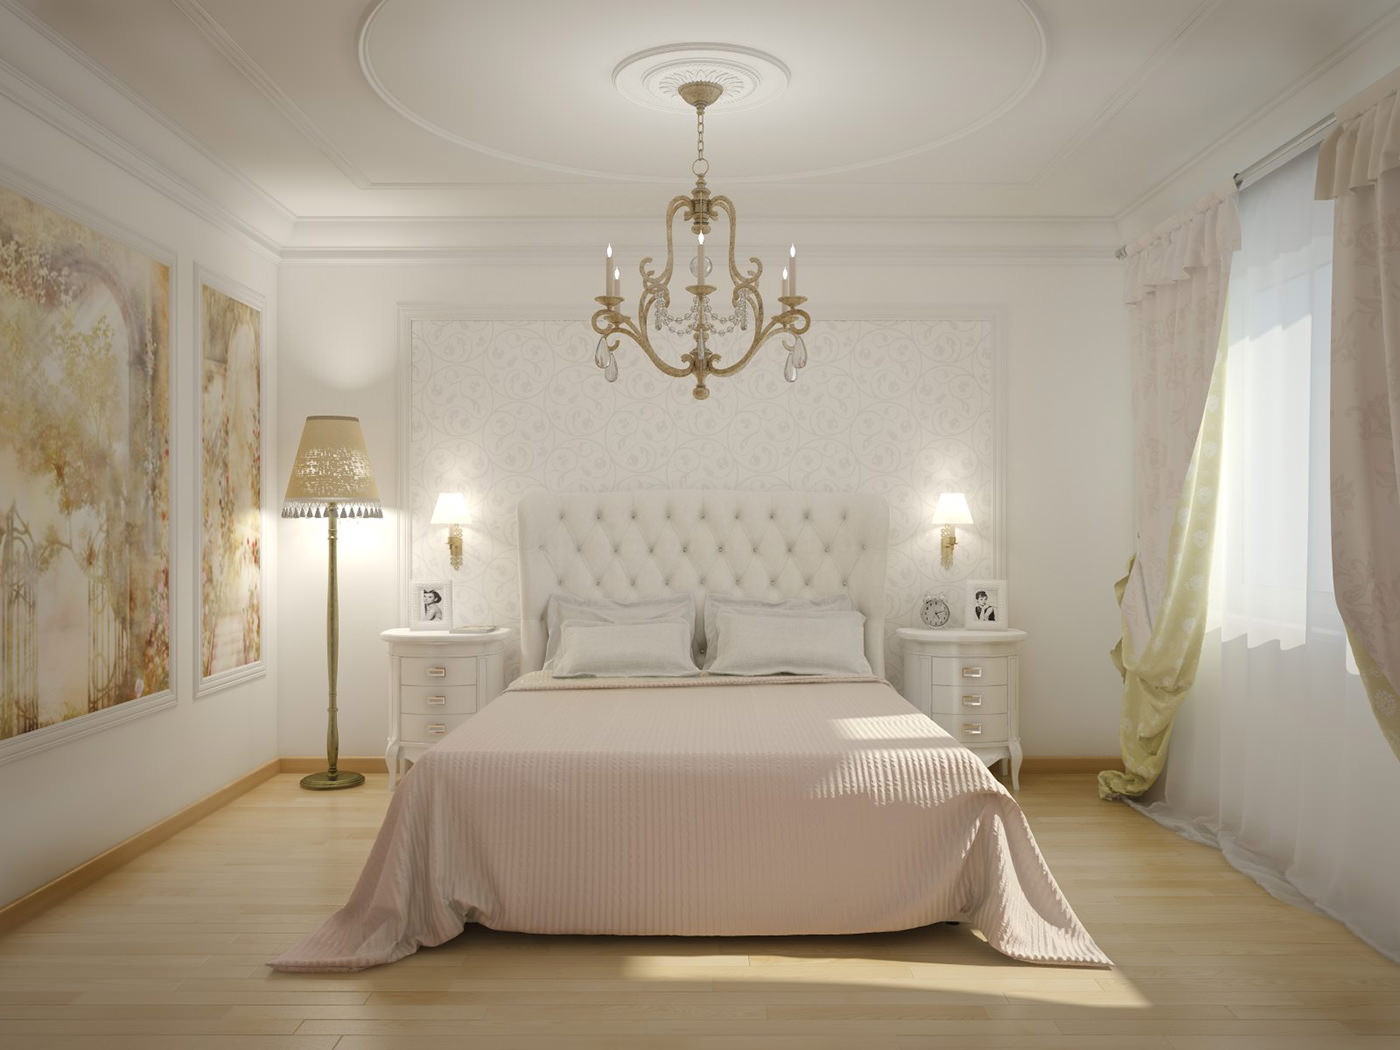 Varian hiasan bilik yang terang dengan gaya klasik moden